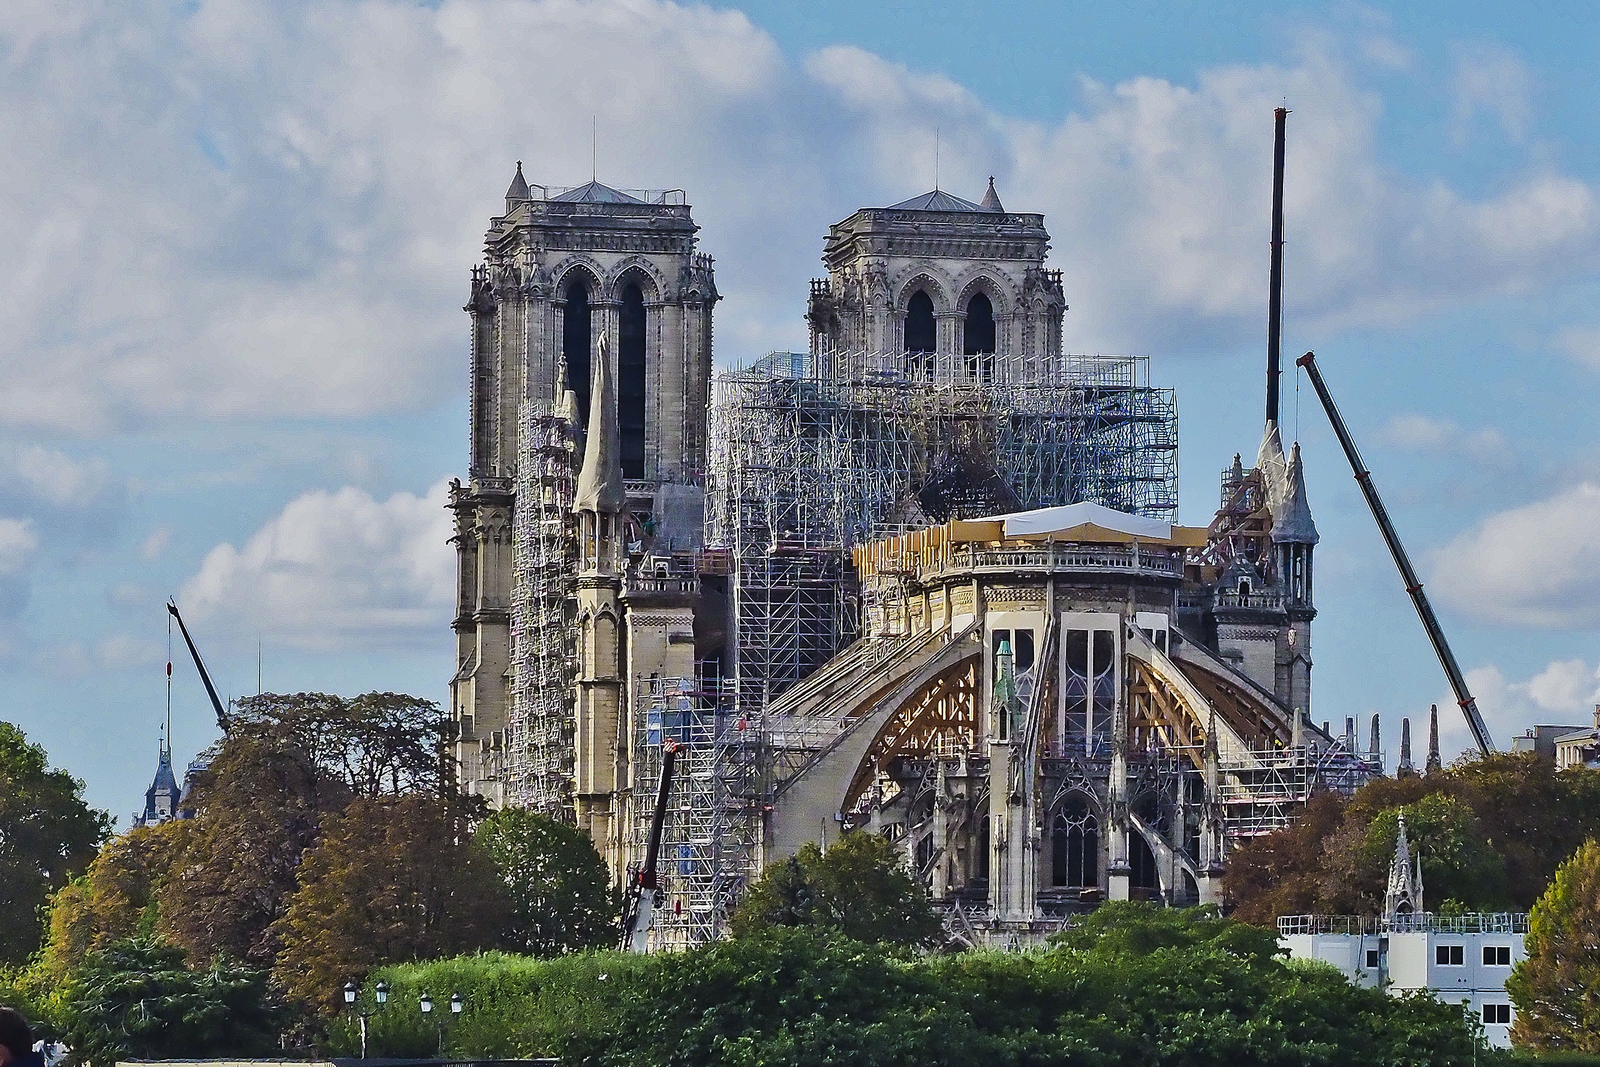 La cathédrale Notre-Dame en travaux après son incendie en avril 2019.
Auteurs  : BALEYDIER/SIPA.
Numéro de reportage  : 00926350_000002.